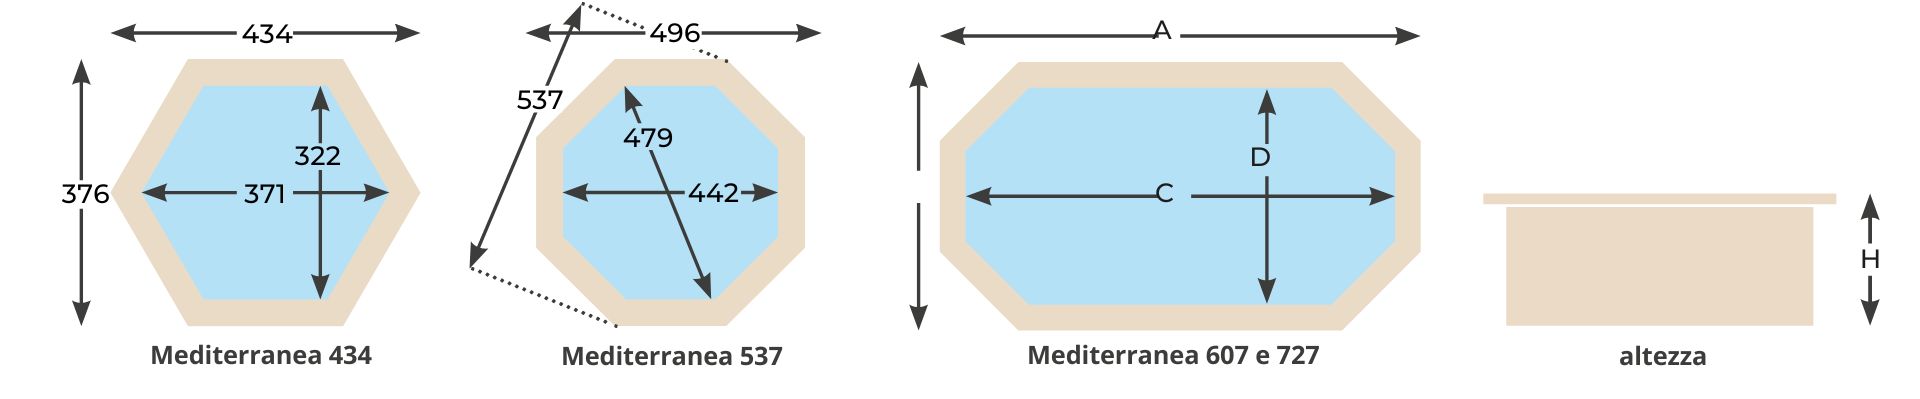 Evo Wellness Mediterranea Piscina fuori terra - caratteristiche modelli